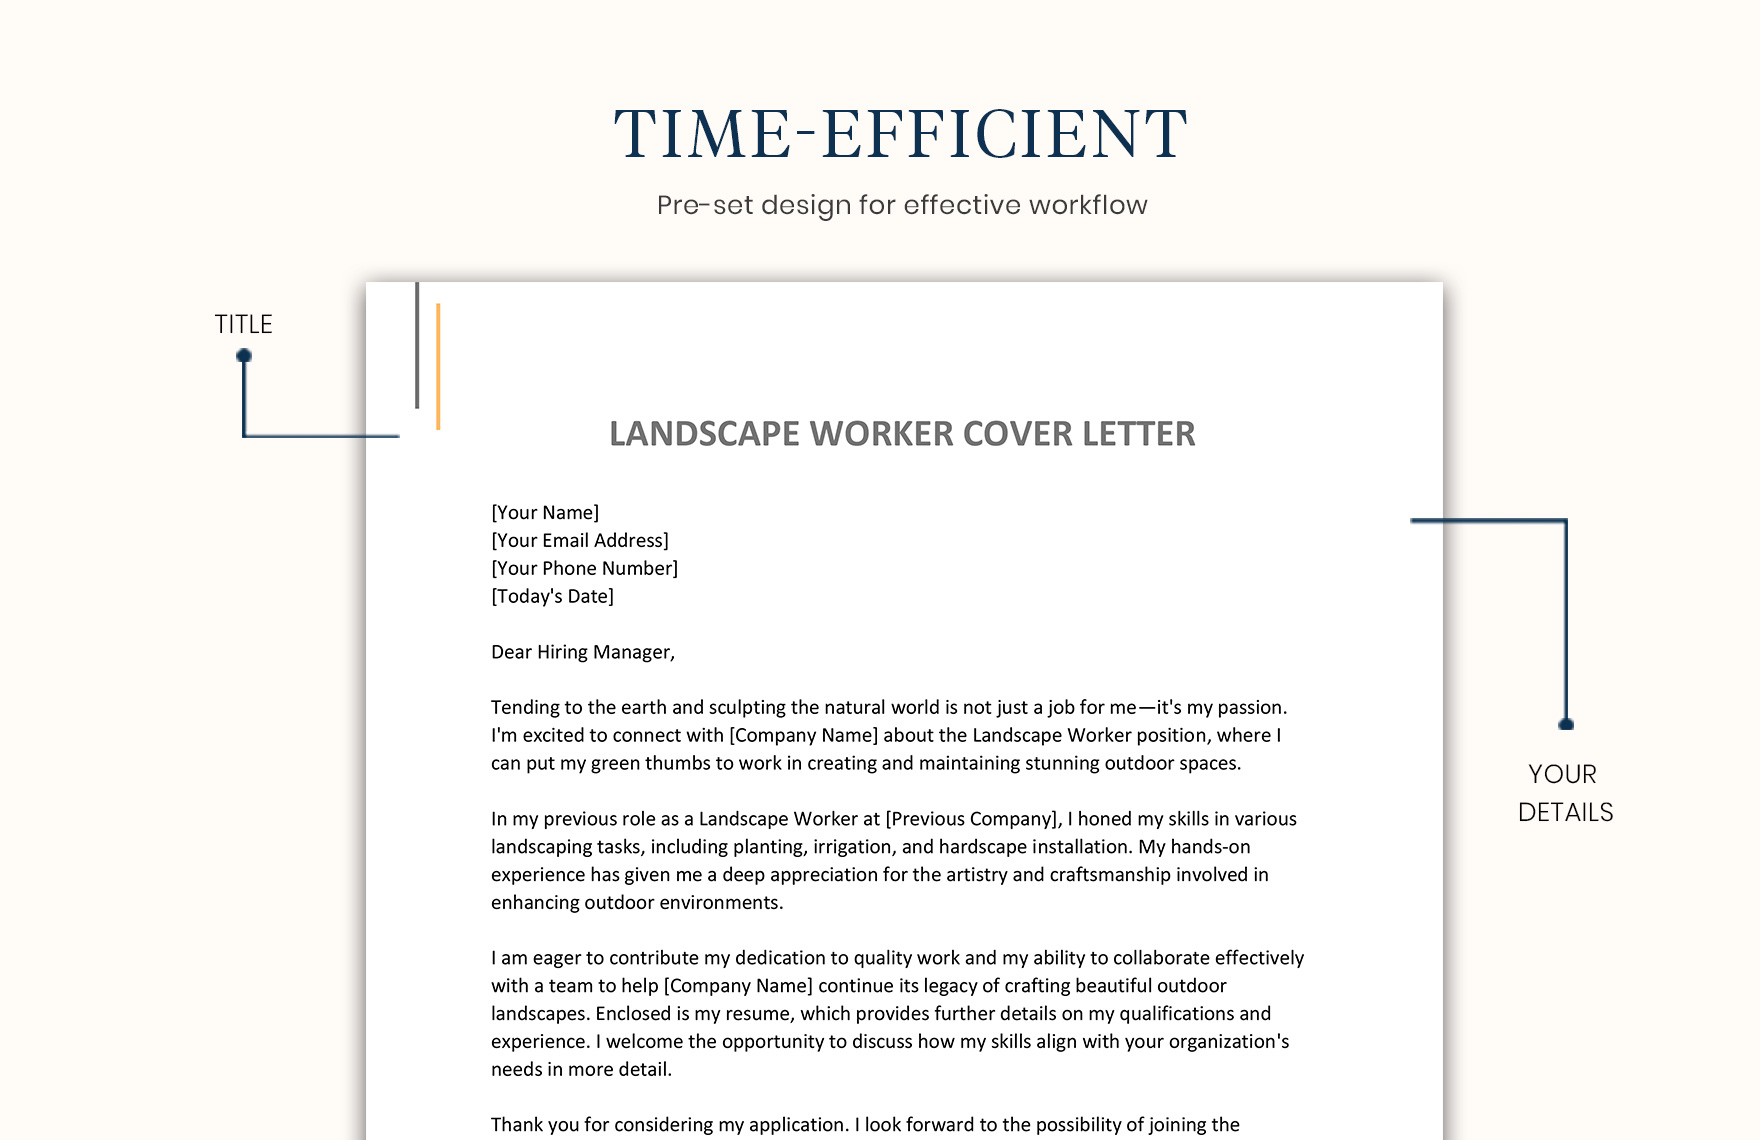 Landscape Worker Cover Letter